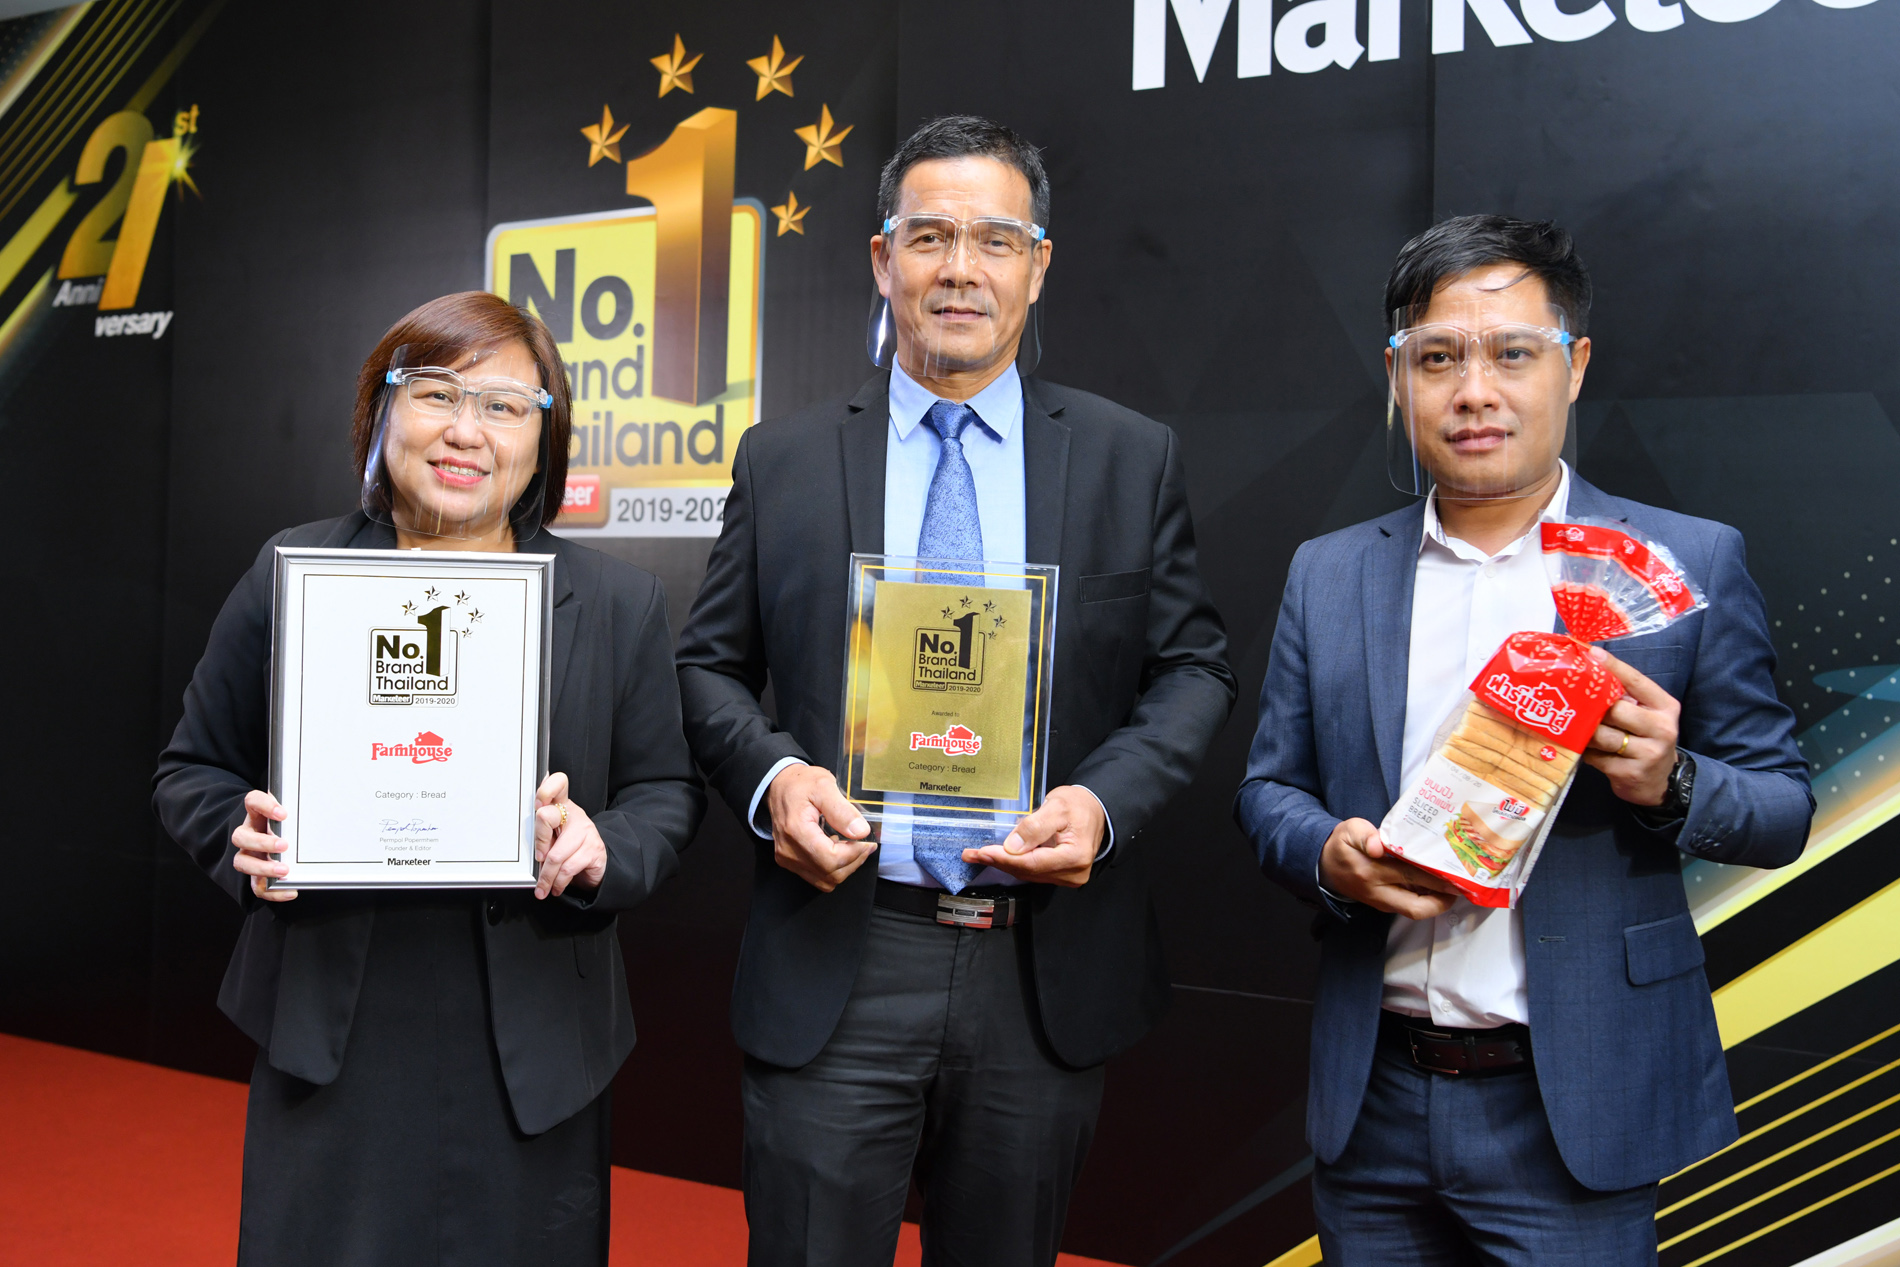 ฟาร์มเฮ้าส์ รับรางวัล Marketeer No.1 Brand Thailand 2019-2020 ตอกย้ำคุณภาพสินค้าครองใจผู้บริโภคอันดับ 1 ต่อเนื่อง 3